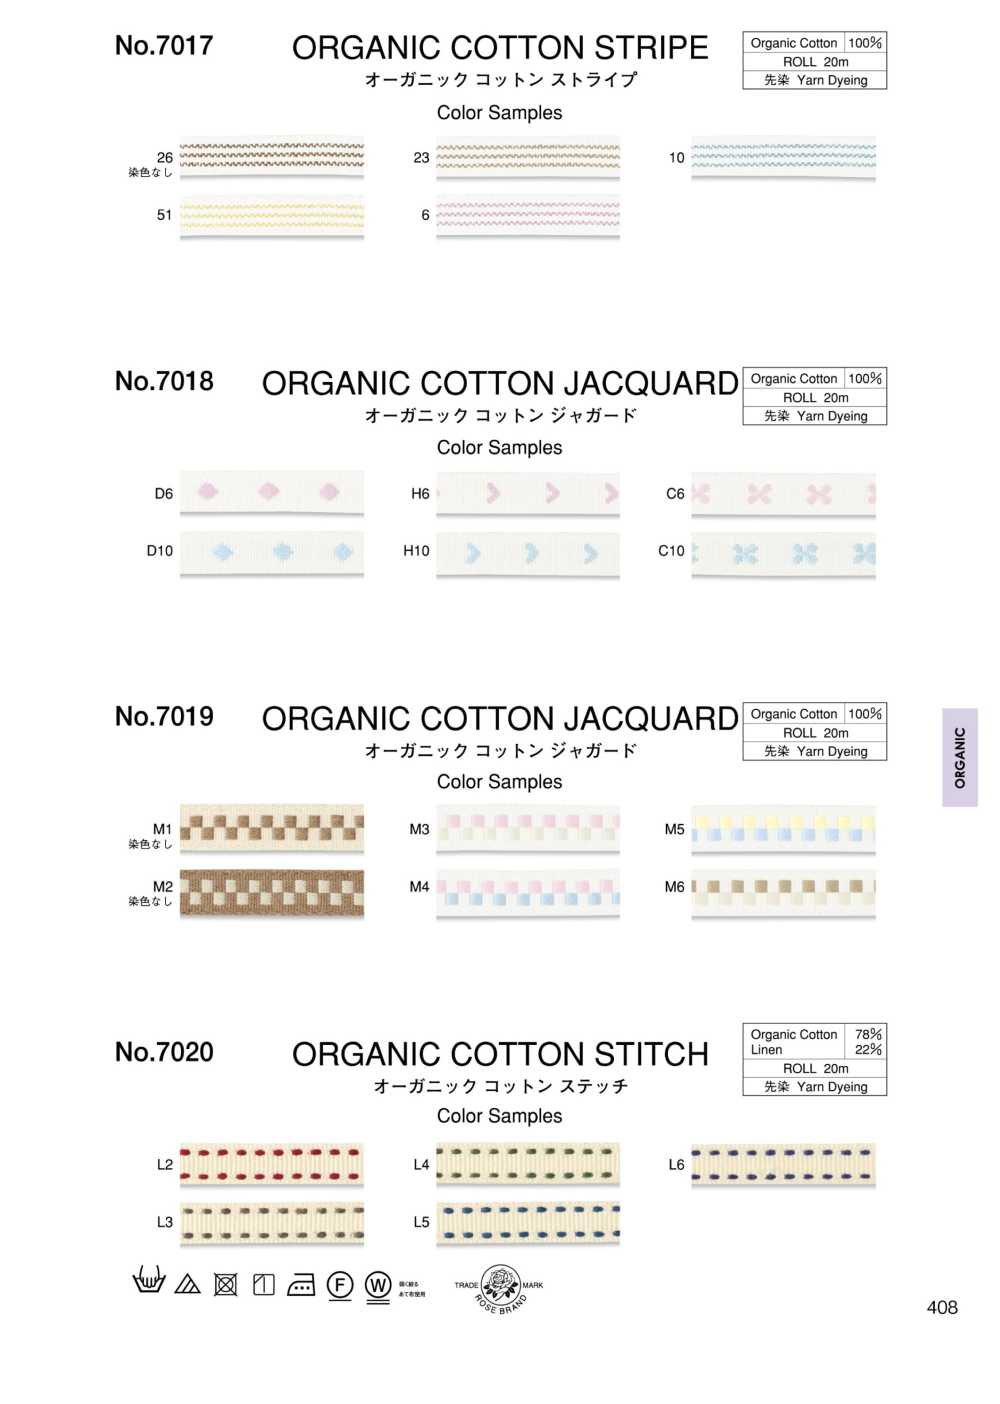 7019 Organic Cotton Jacquard[Ribbon Tape Cord] ROSE BRAND (Marushin)